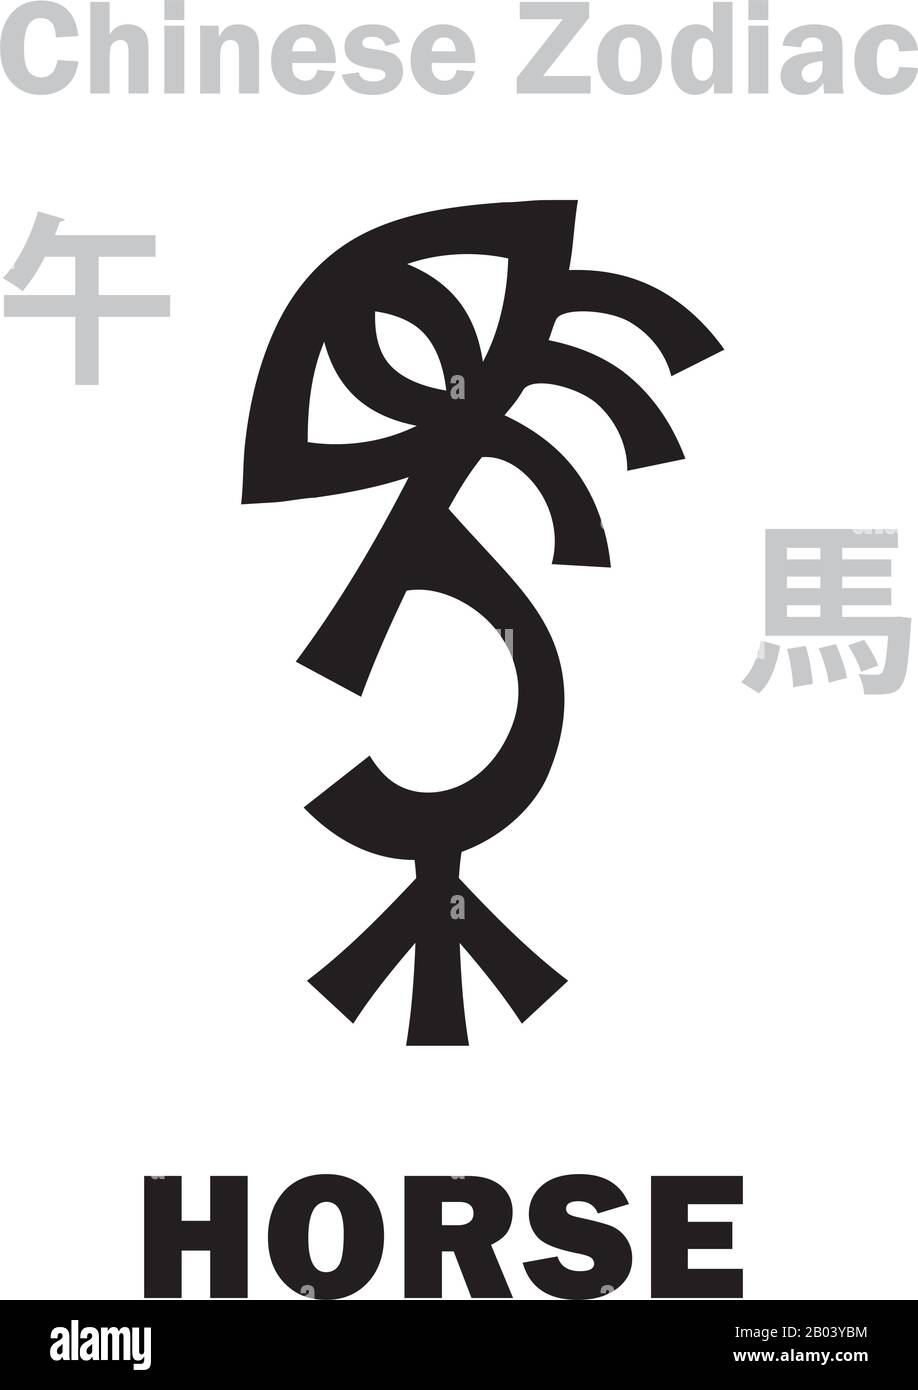 Astrologie-Alphabet: Pferd [馬] Zeichen des chinesischen Tierkreises. Chinesisches Zeichen, hieroglyphisches Zeichen (Symbol). Stock Vektor